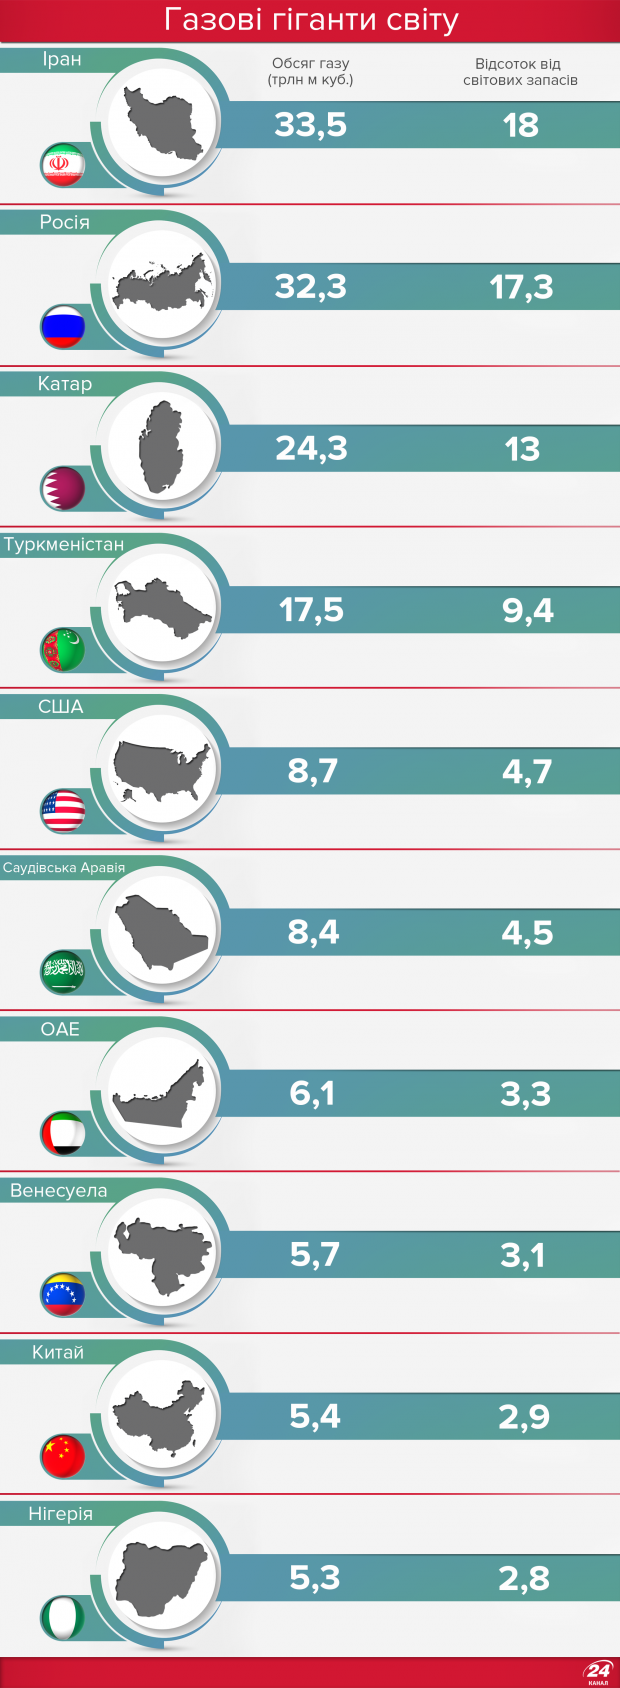 Хто володіє найбільшими запасами газу в світі: опублікована інфографіка